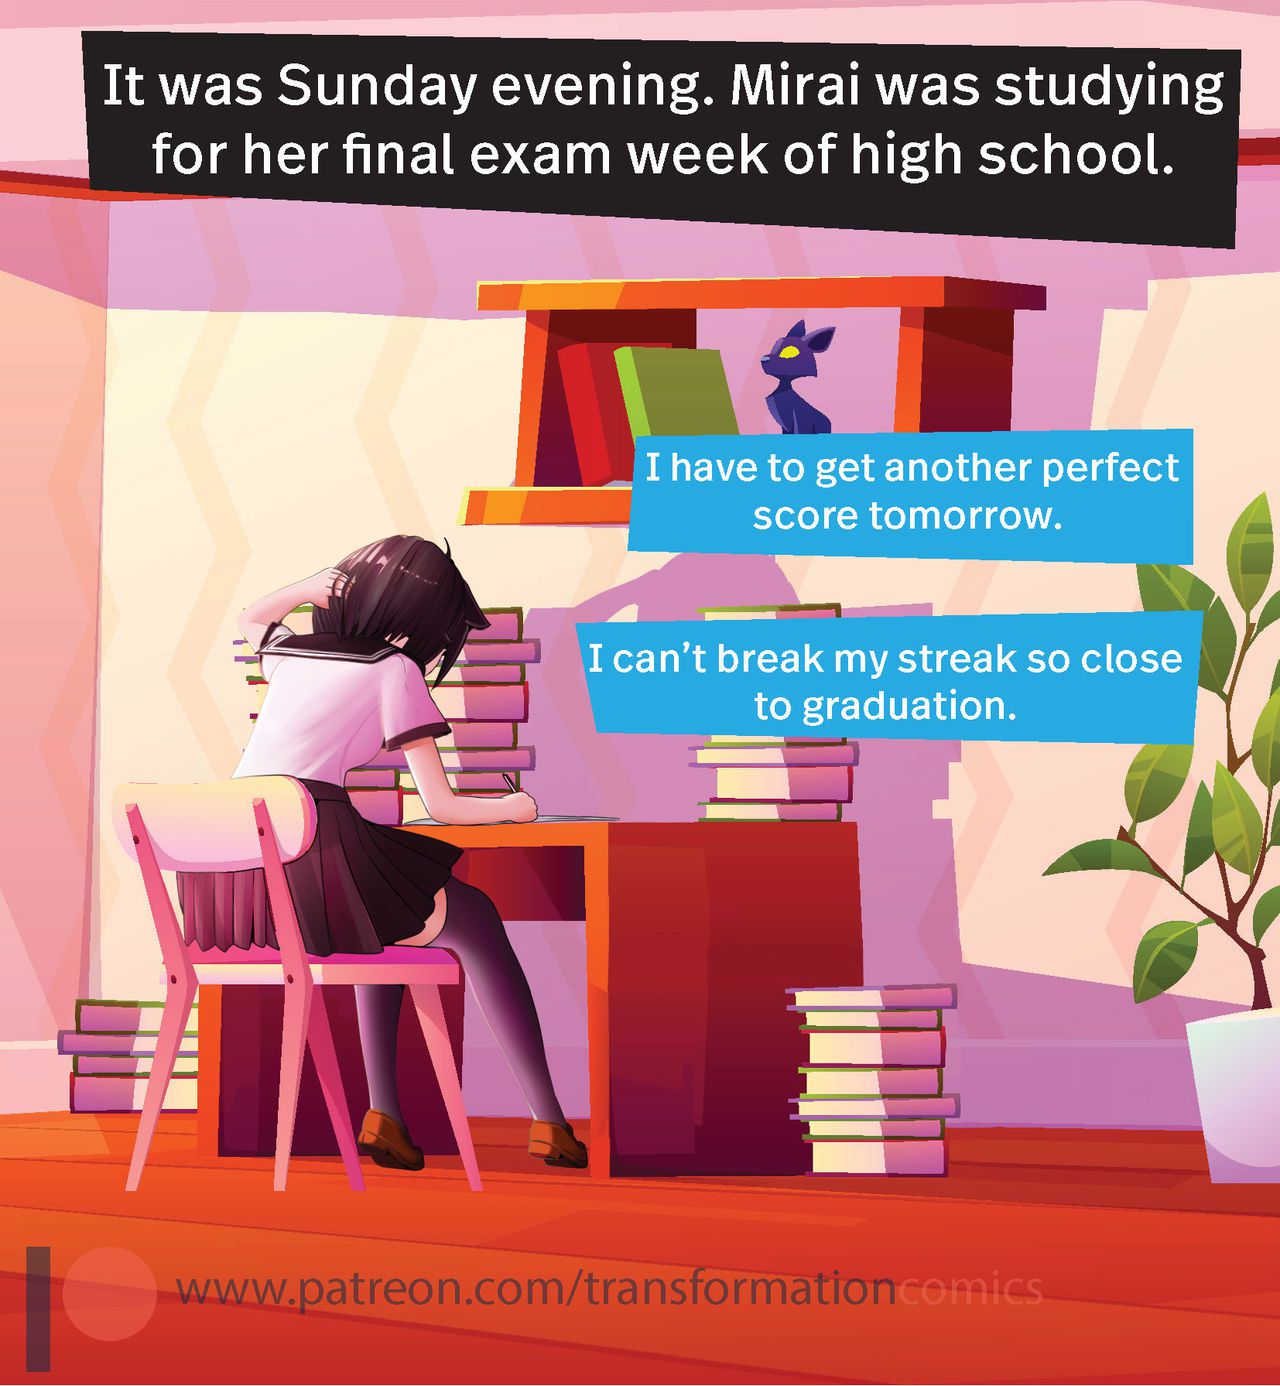 Mirai's Exam Preparation [Ongoing] 1